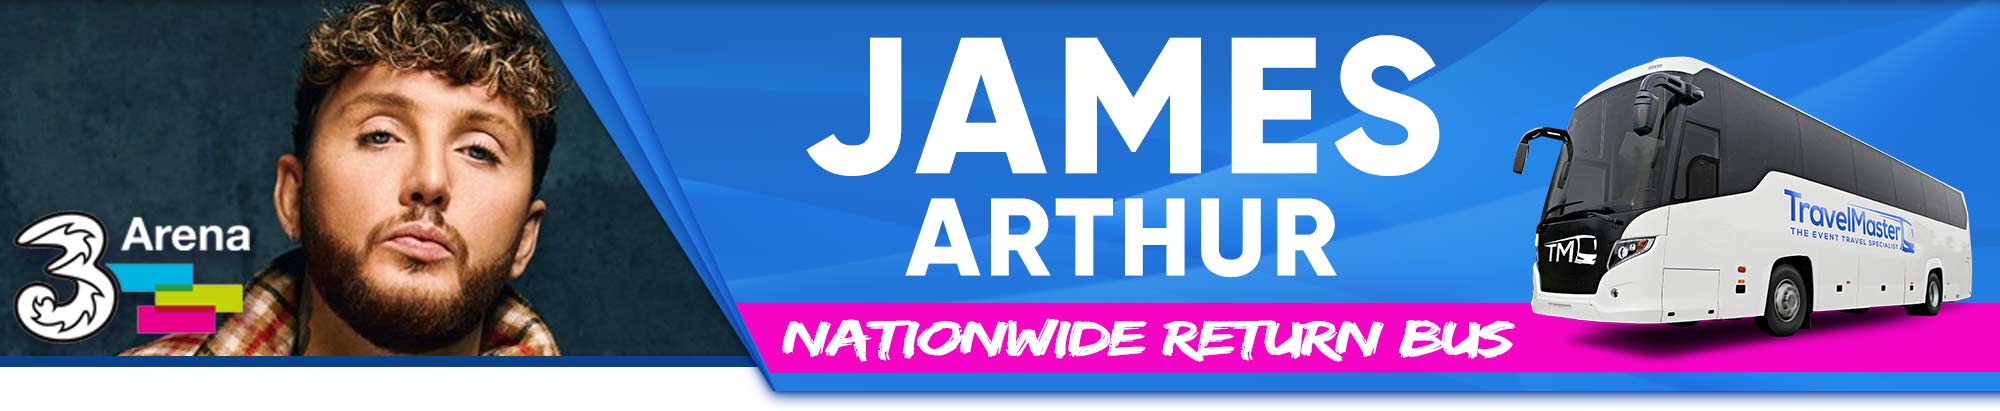 Bus to James Arthur 3Arena 2020